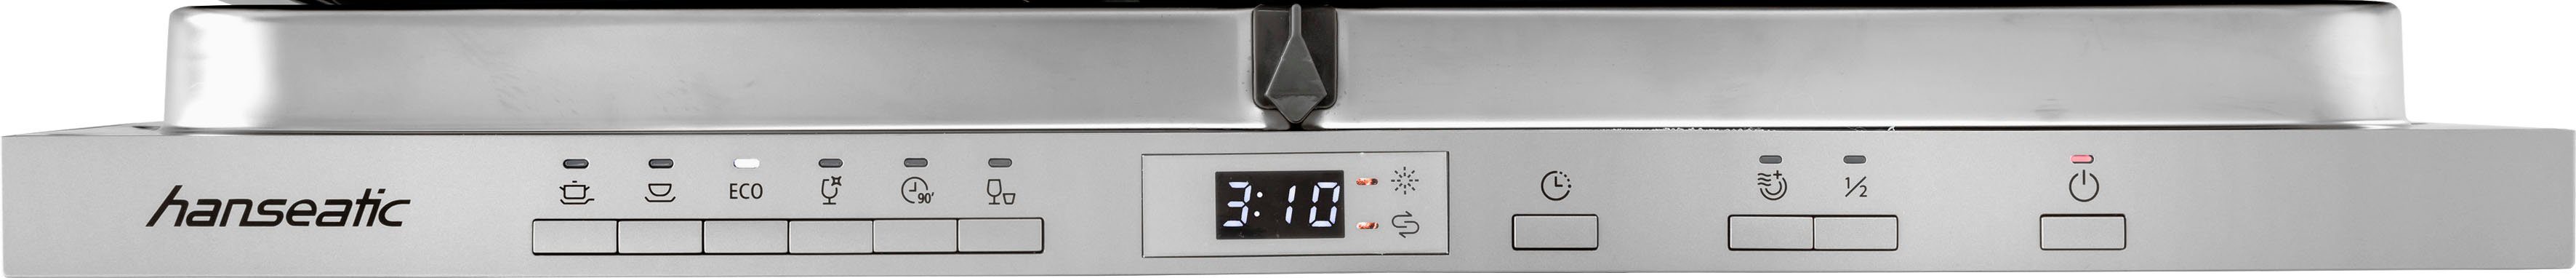 cm HANSEATIC Marke Elektrogeräte | grau/weiß Küchenzeile der breit, inkl. wildeichefarben Iver, 210 OPTIFIT